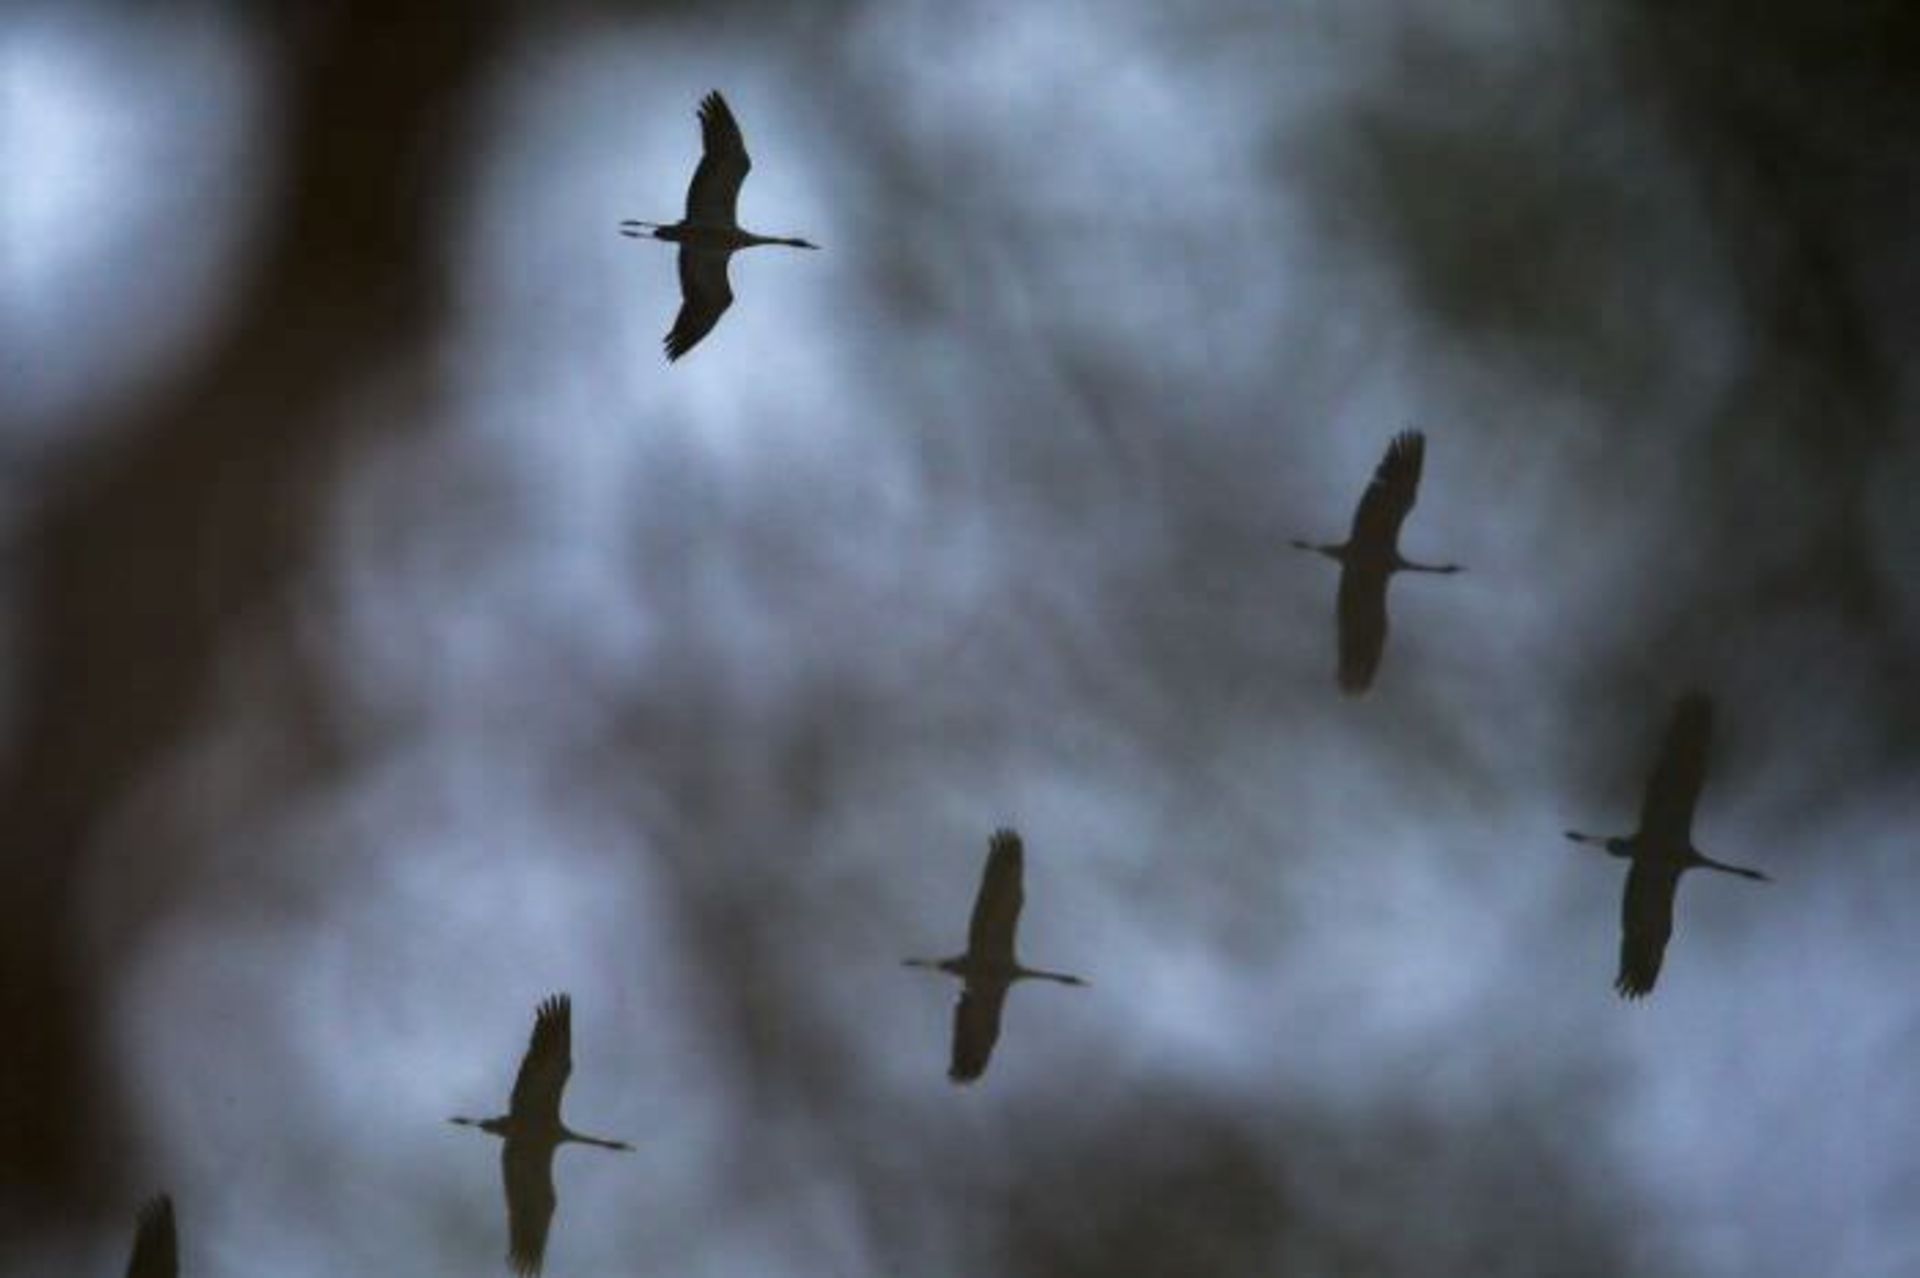 یک دسته پرنده در حال پرواز در آسمان / اوری و هلی لاویلد گلمن